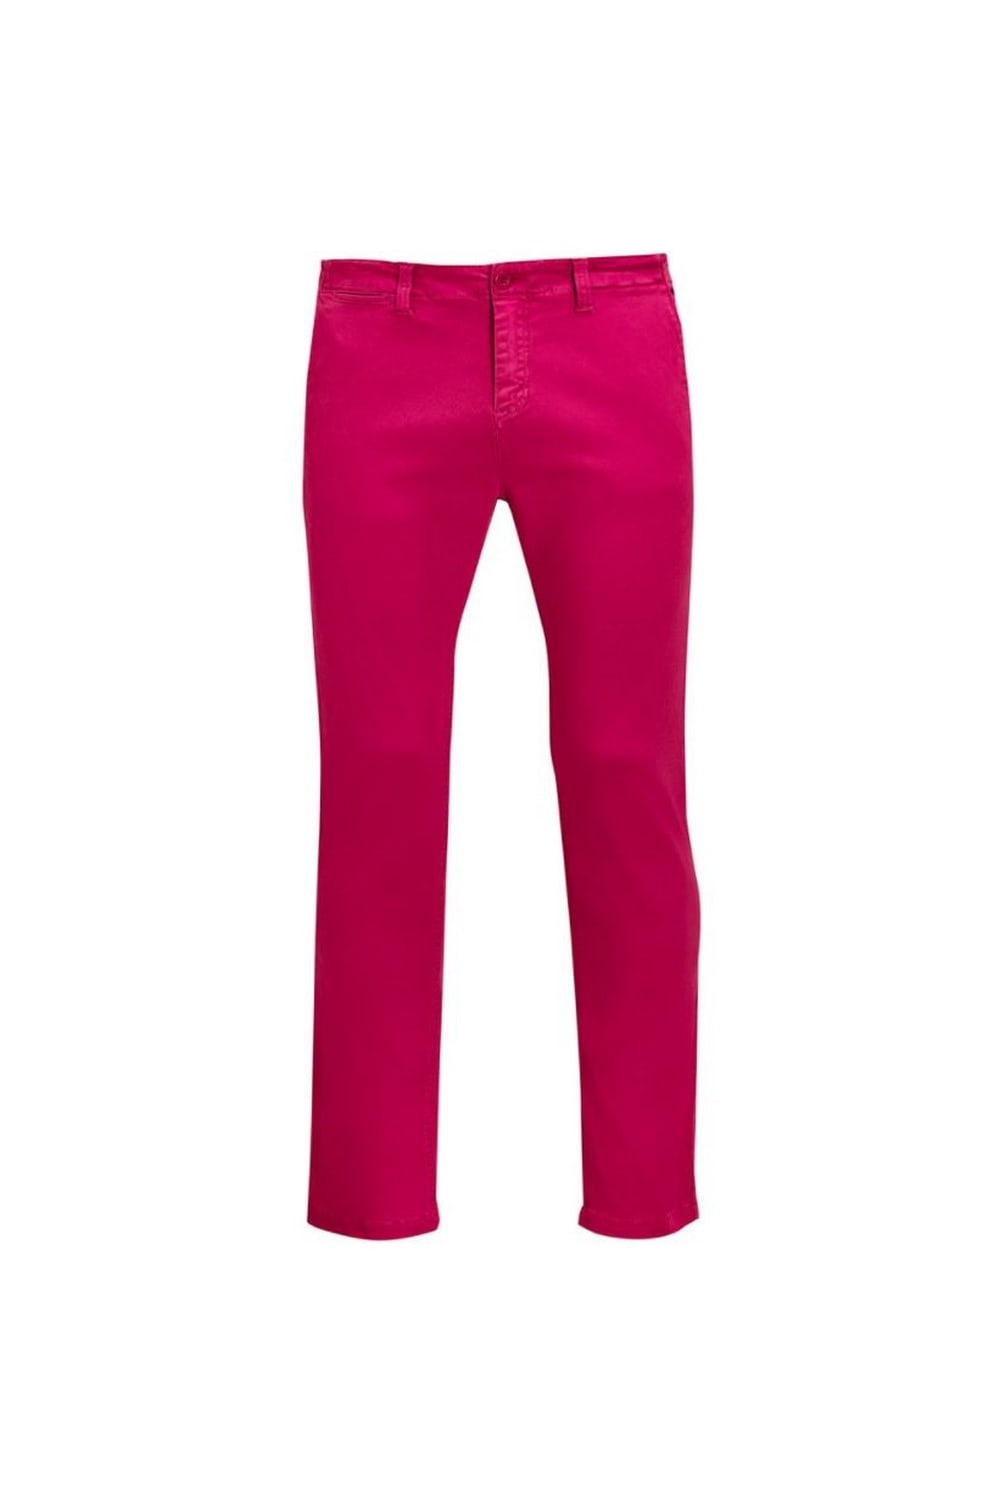 SOLS Mens Jules Chino Pants (Sunset Pink)